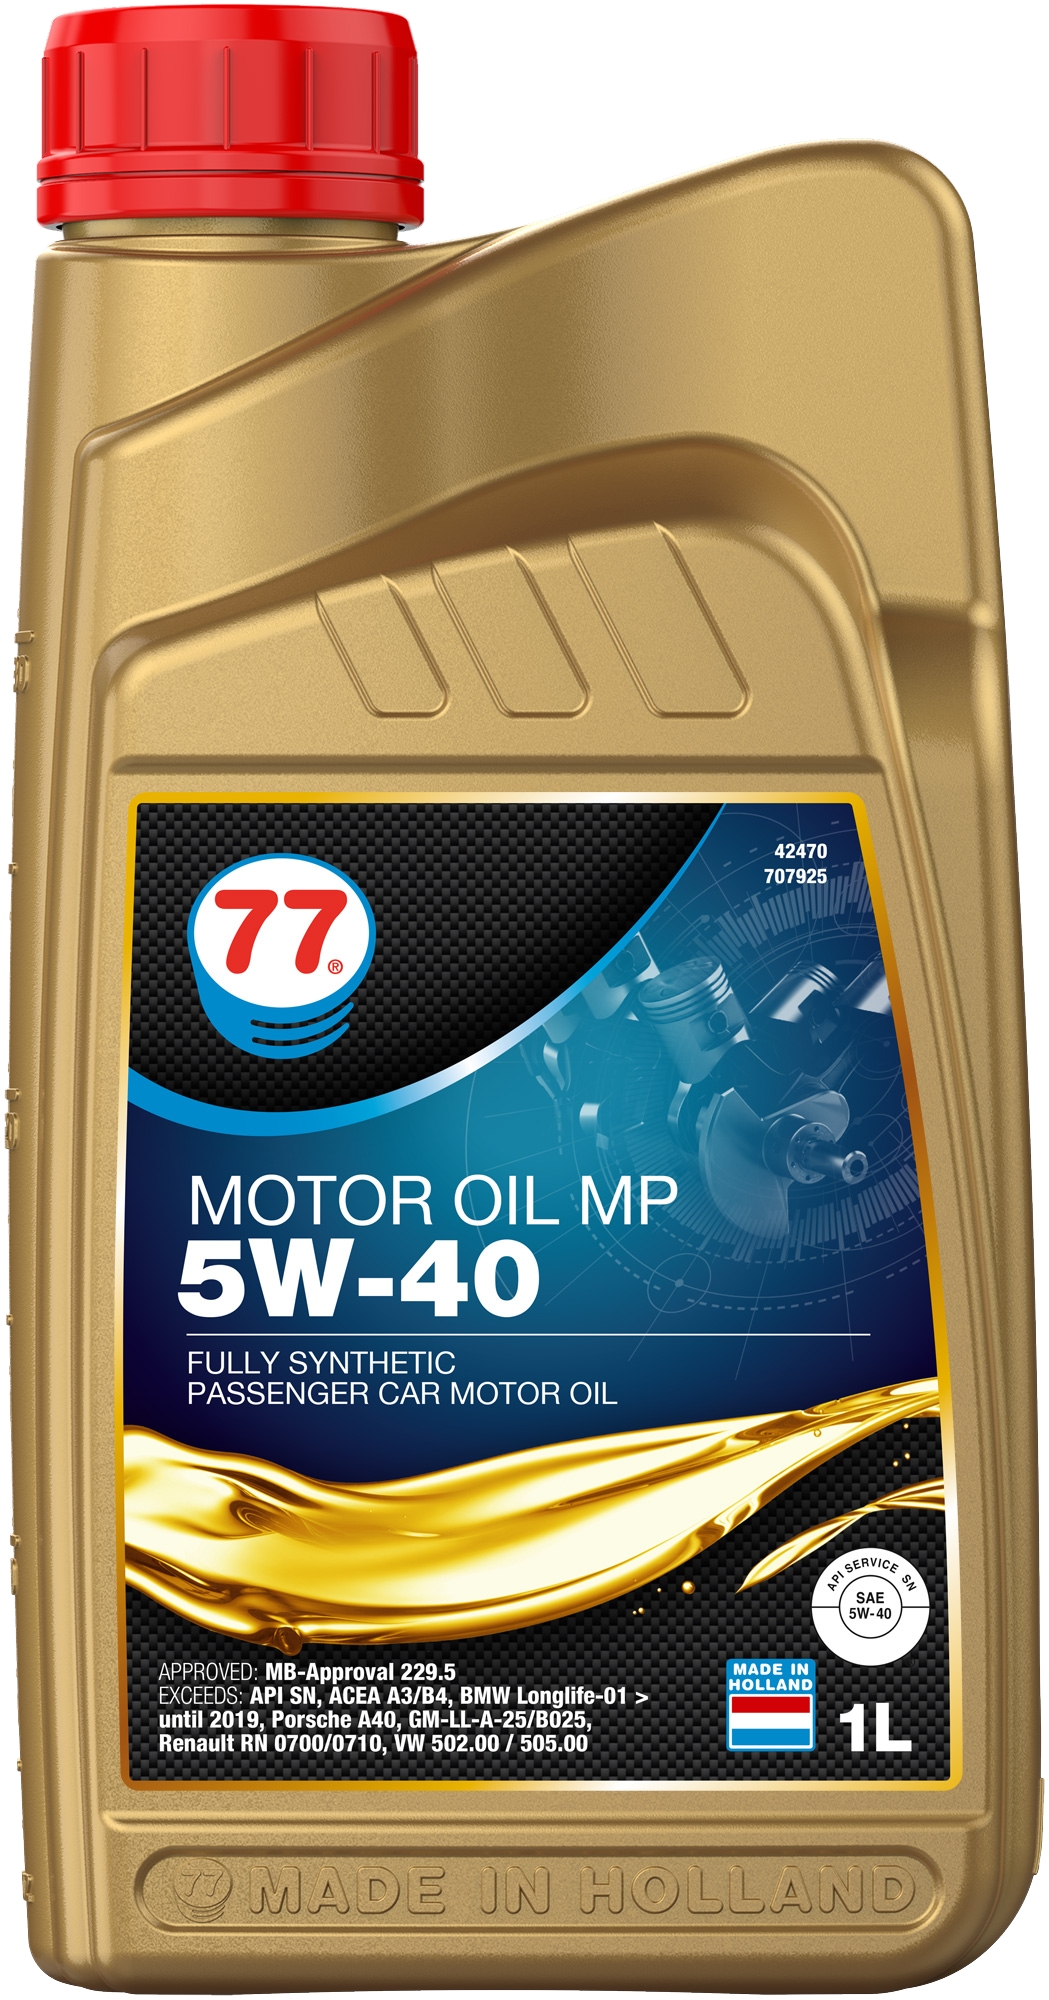 MOTOR OIL MP 5W-40